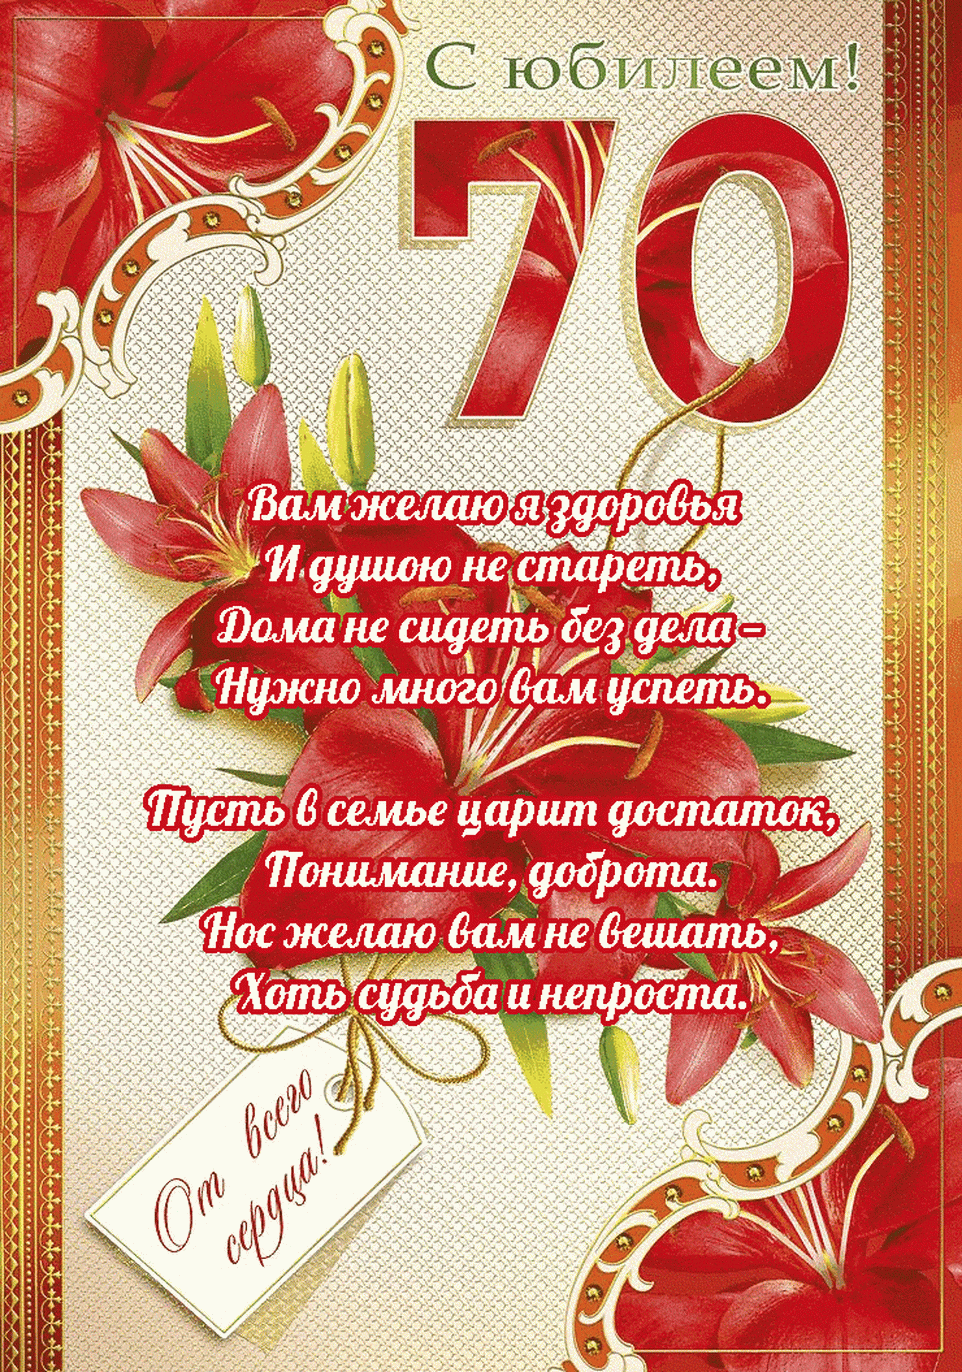 Поздравления с 70 летием | pzdb.ru - поздравления на все случаи жизни